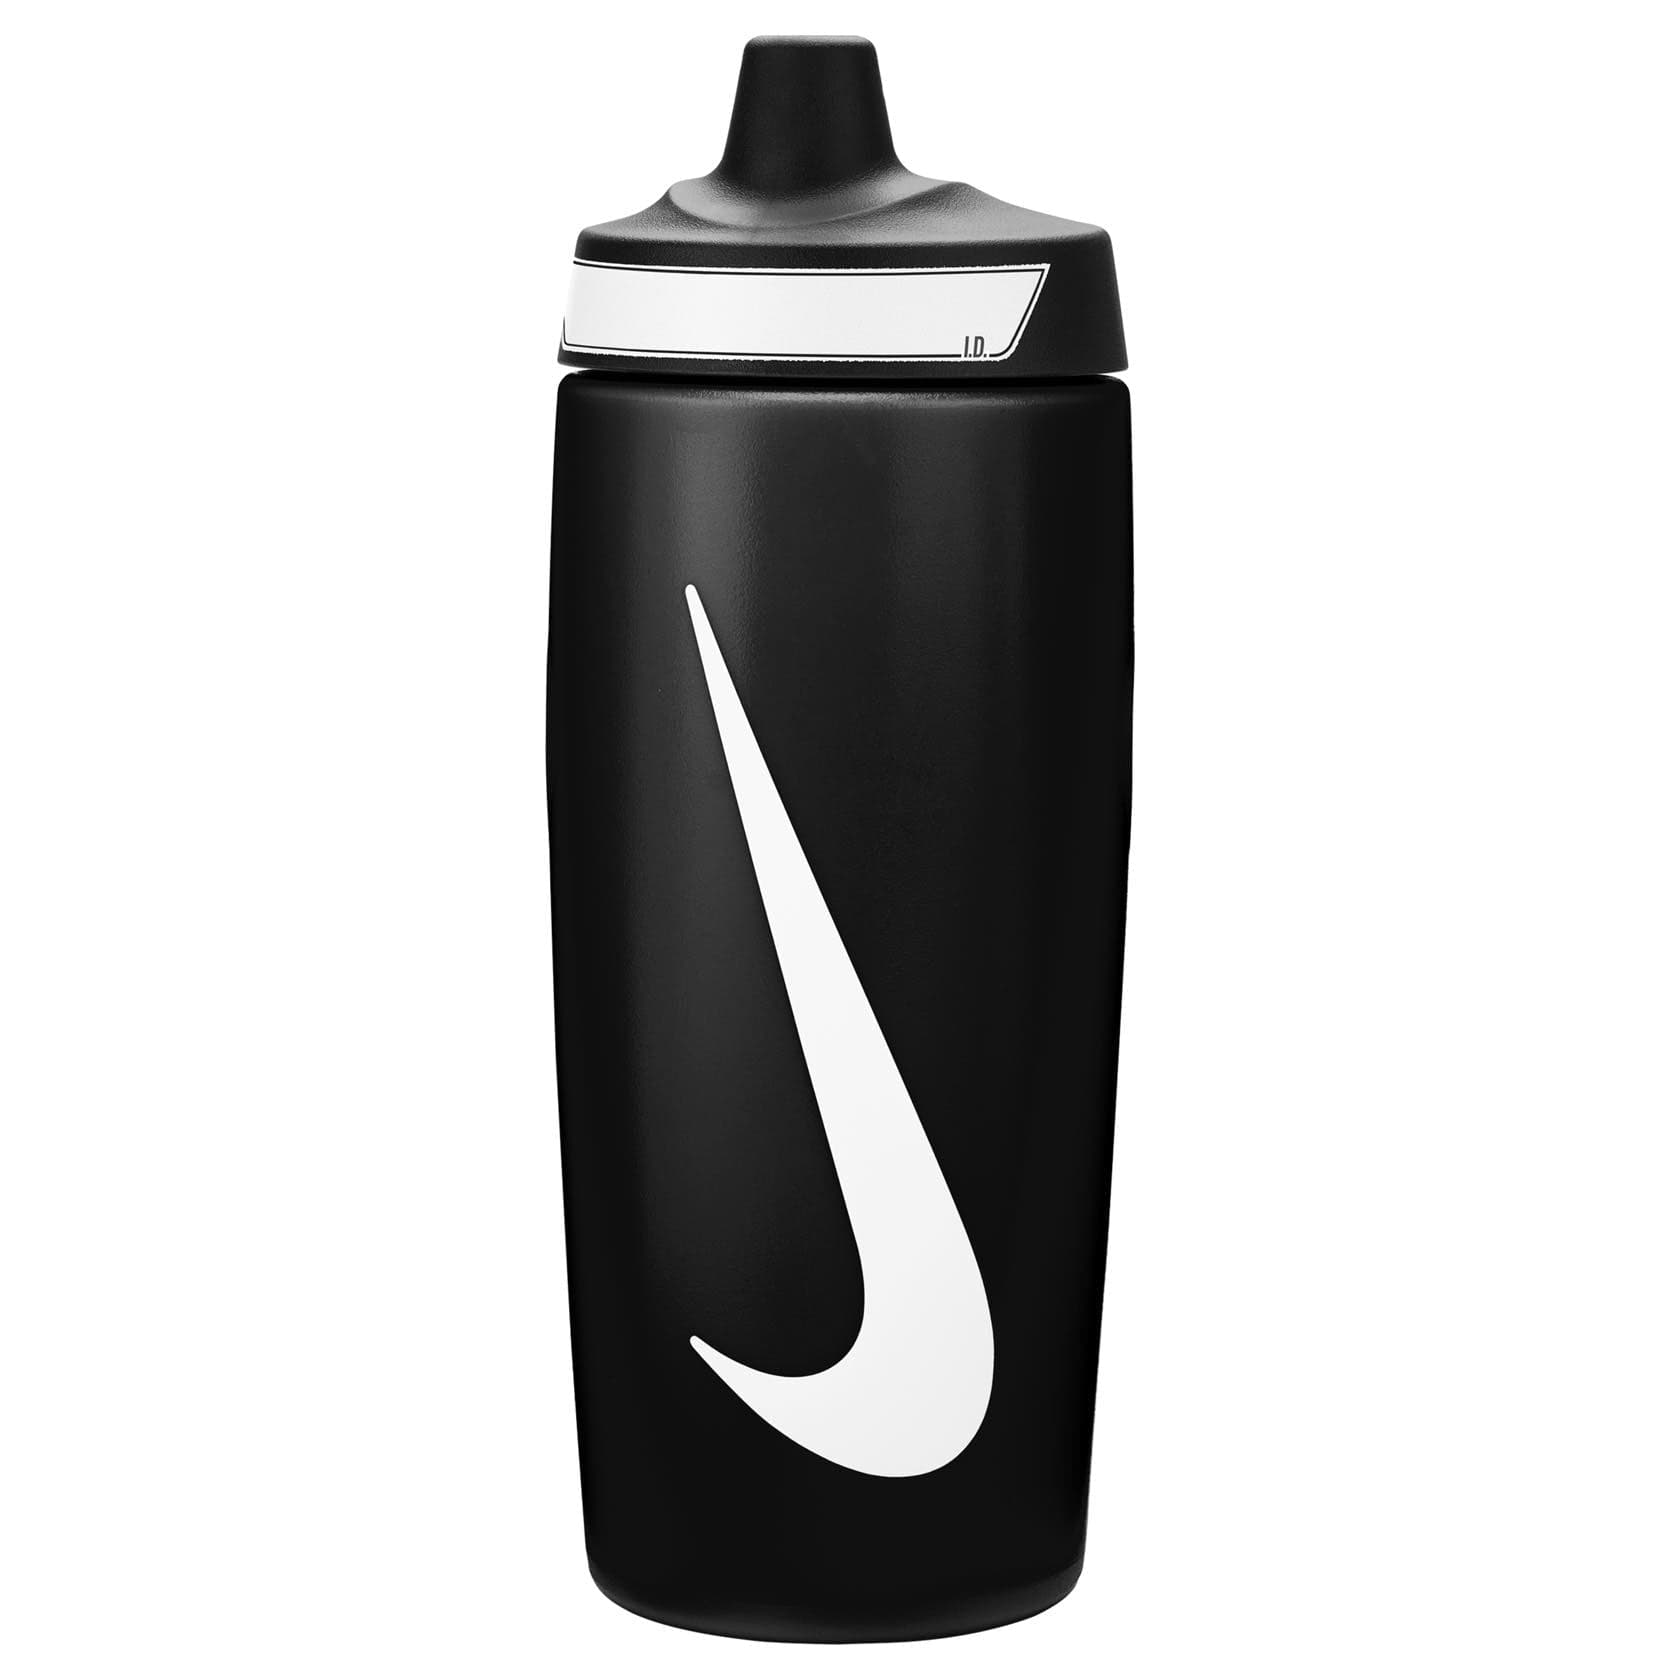 Nike Refuel Water Bottle 18OZ